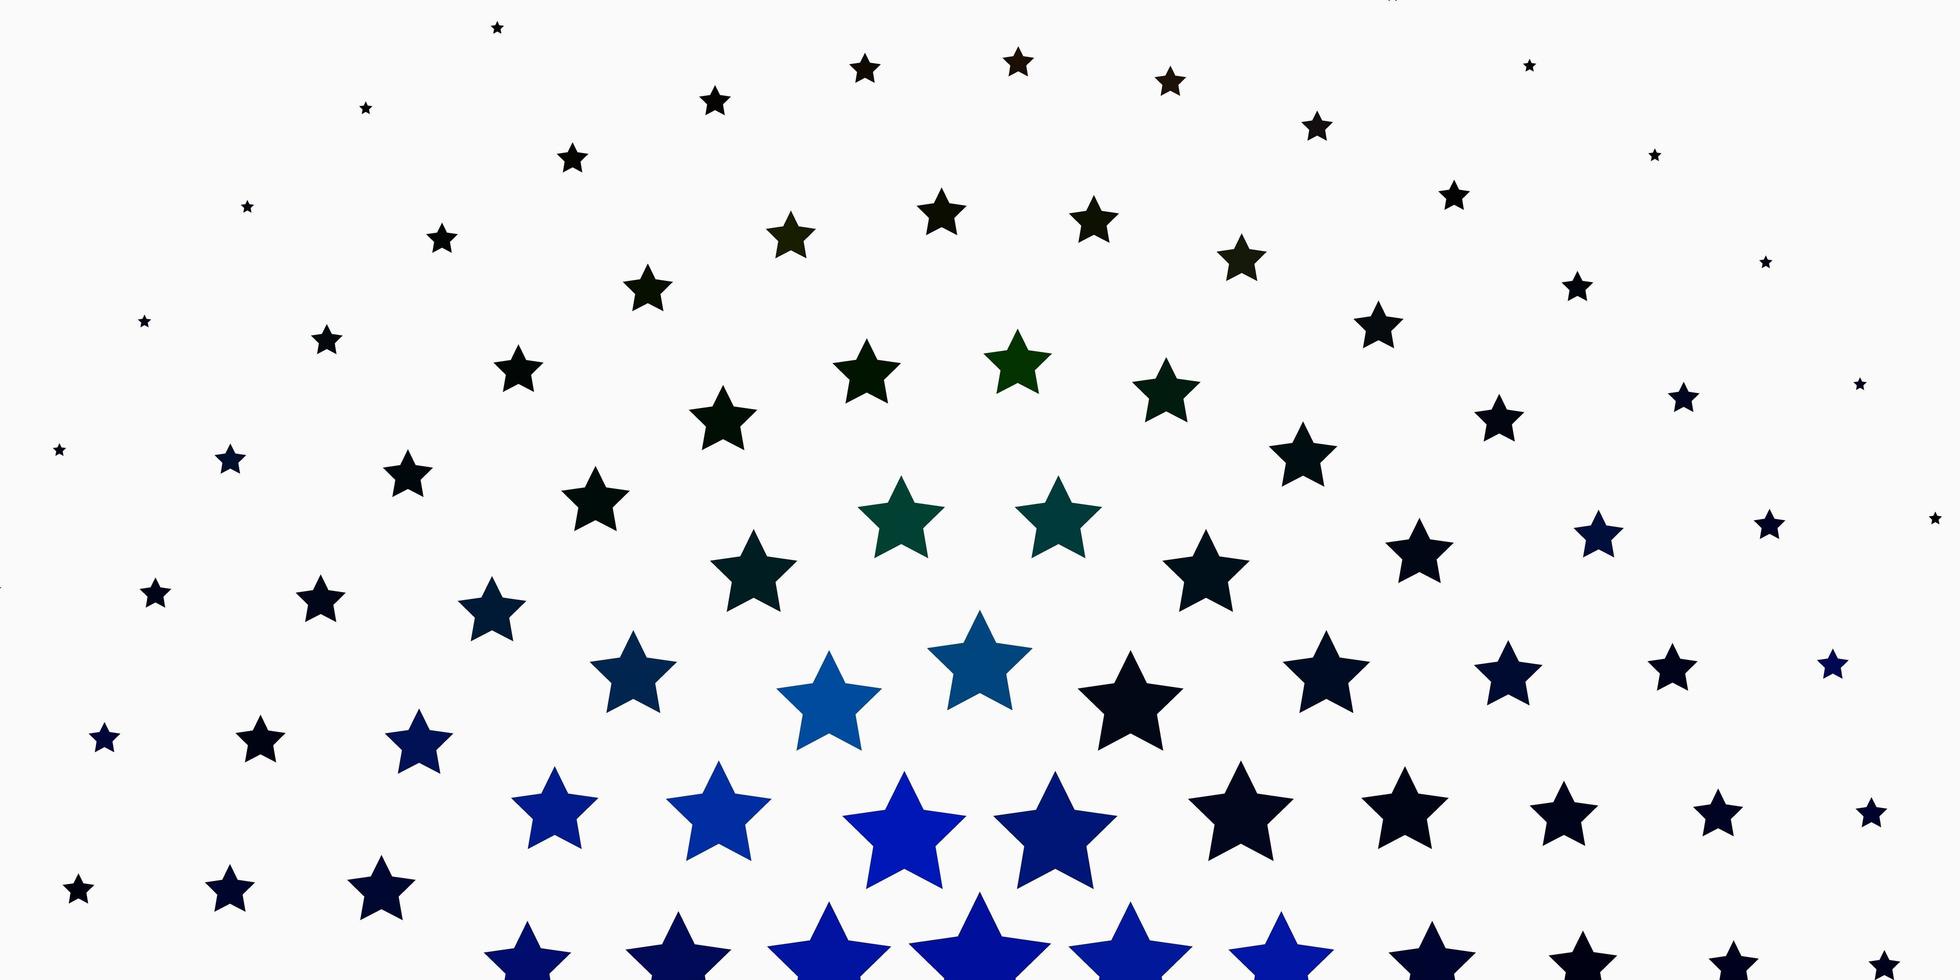 sfondo vettoriale multicolore chiaro con stelle piccole e grandi.